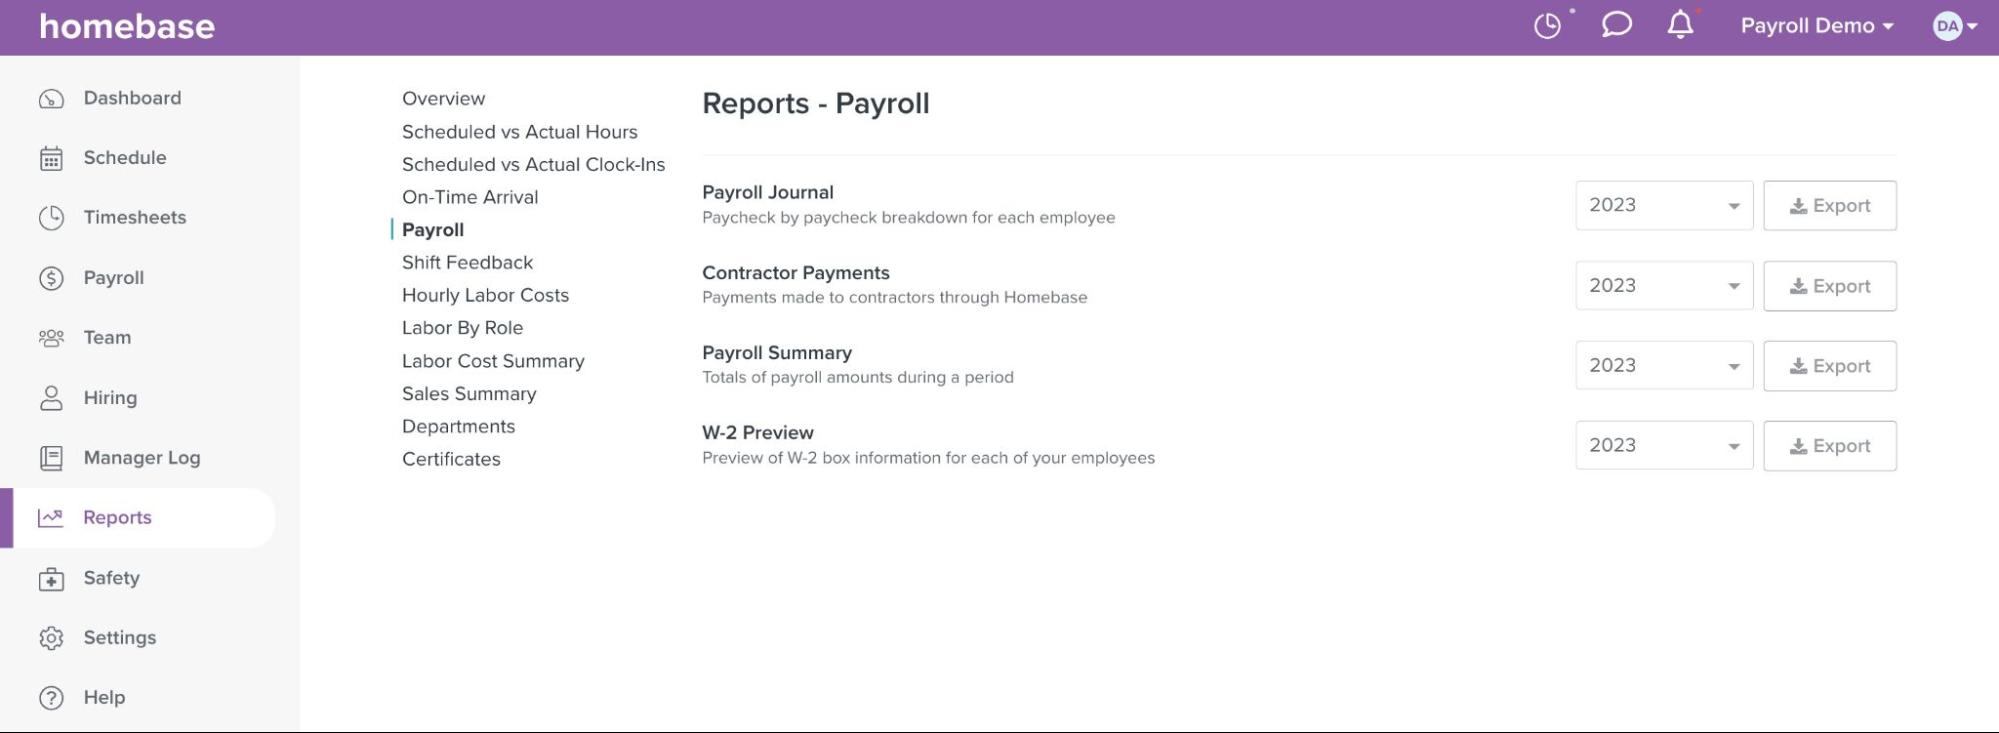 A screenshot of the Homebase payroll dashboard.